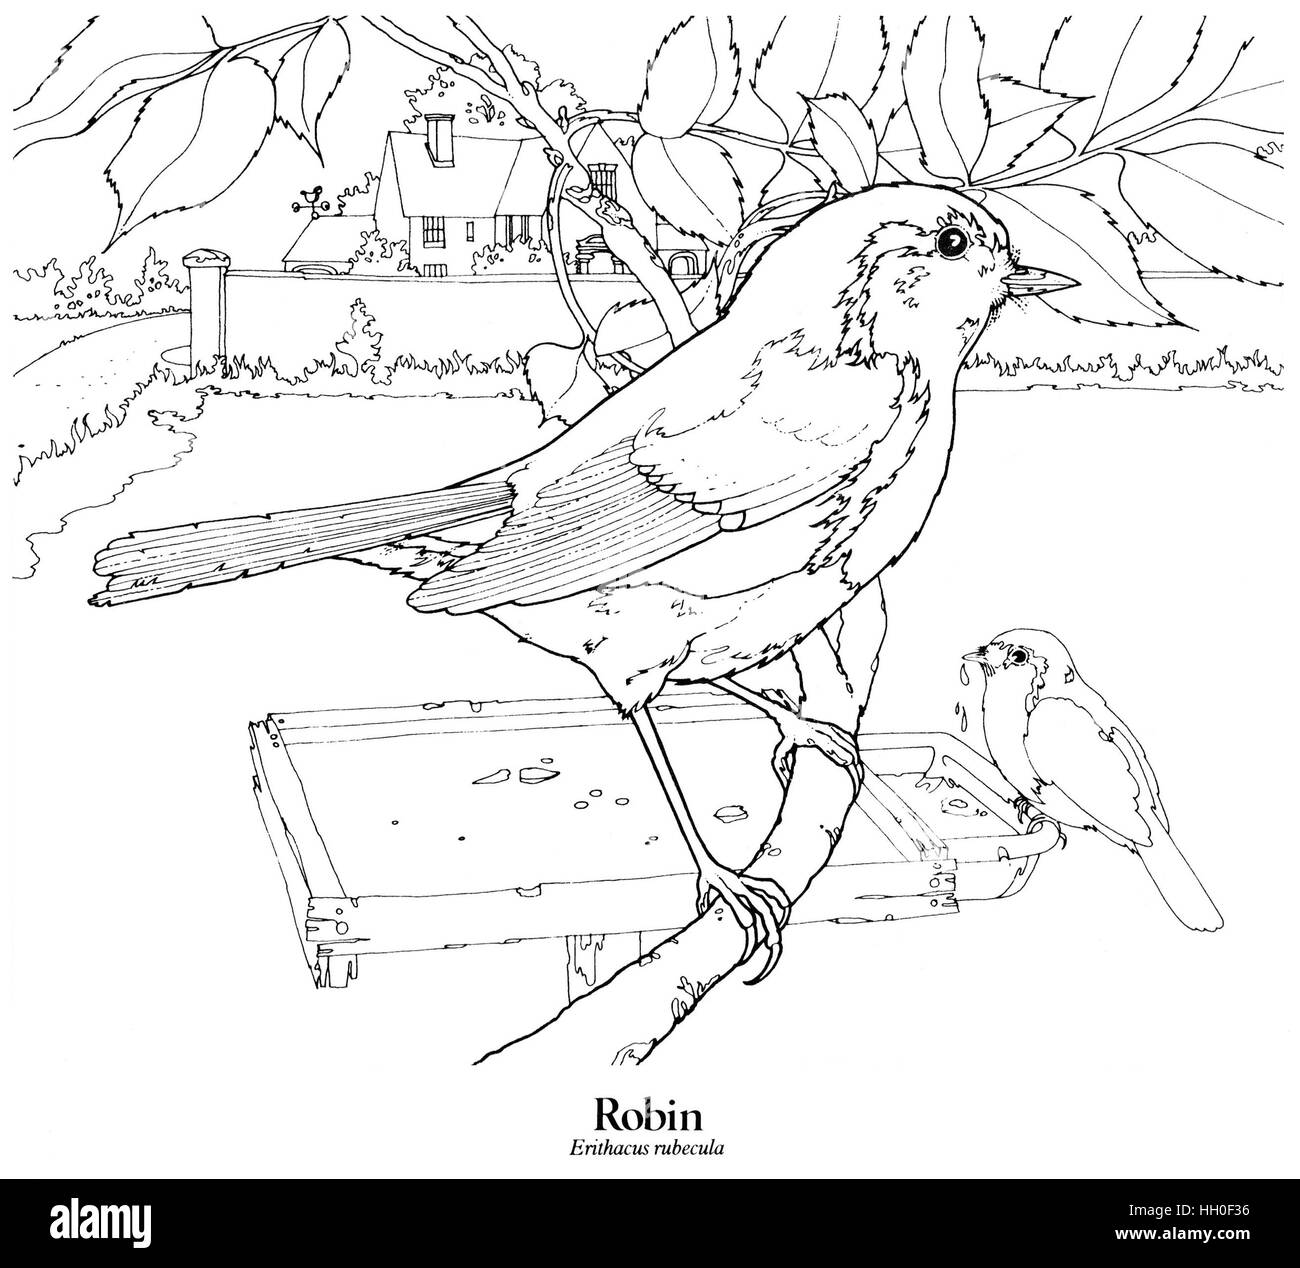 Robin Erithacus Rubecula. Ein britischer Bewohner und britischen Vogel. Schwarz auf weiß Strichzeichnung. Stockfoto